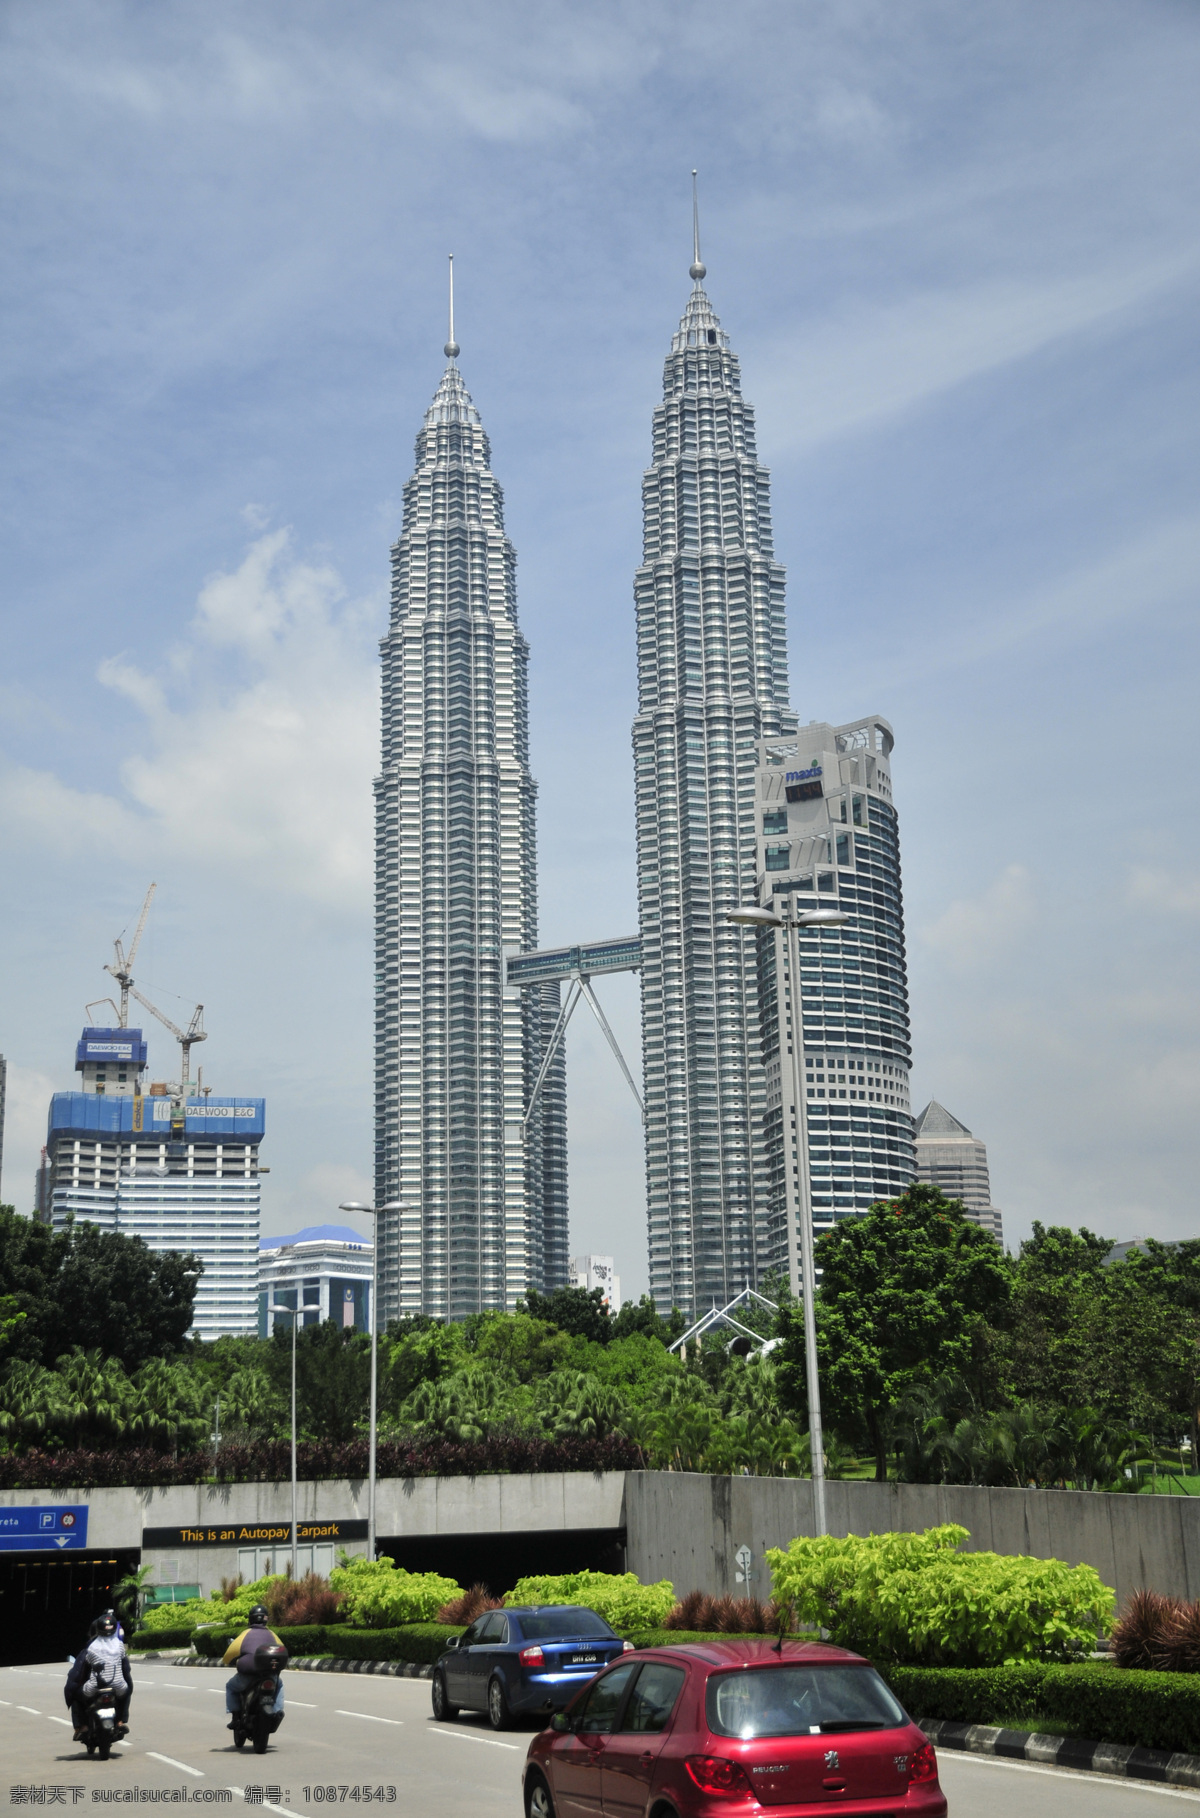 马来西亚 双峰 塔 双峰塔 玉米楼 吉隆坡 旅游 建筑 现代建筑 大厦 楼房 建筑景观 自然景观